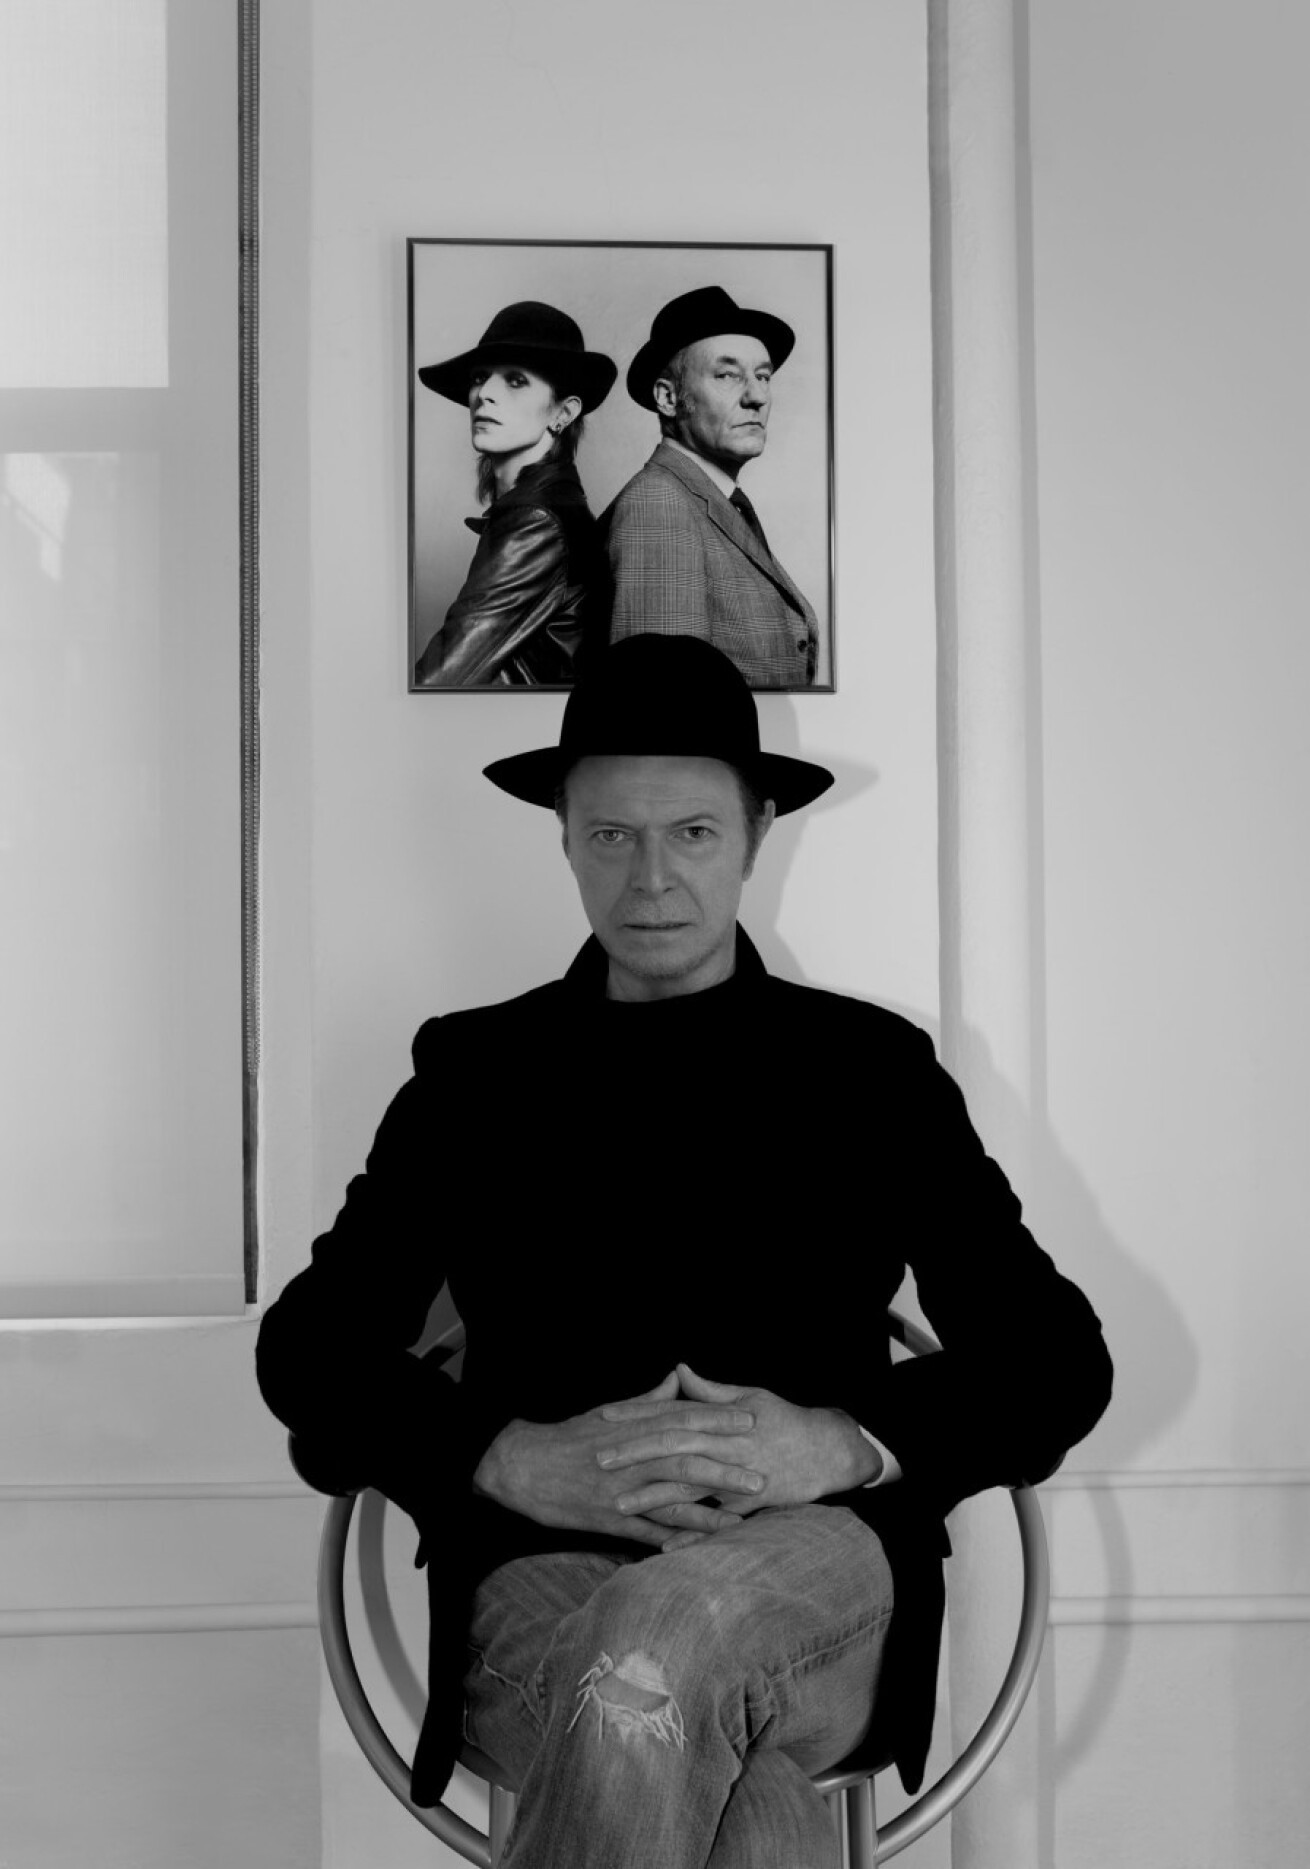 時代と共に変化し続けたアーティスト David Bowie デヴィッド ボウイ 逝去 Iflyer